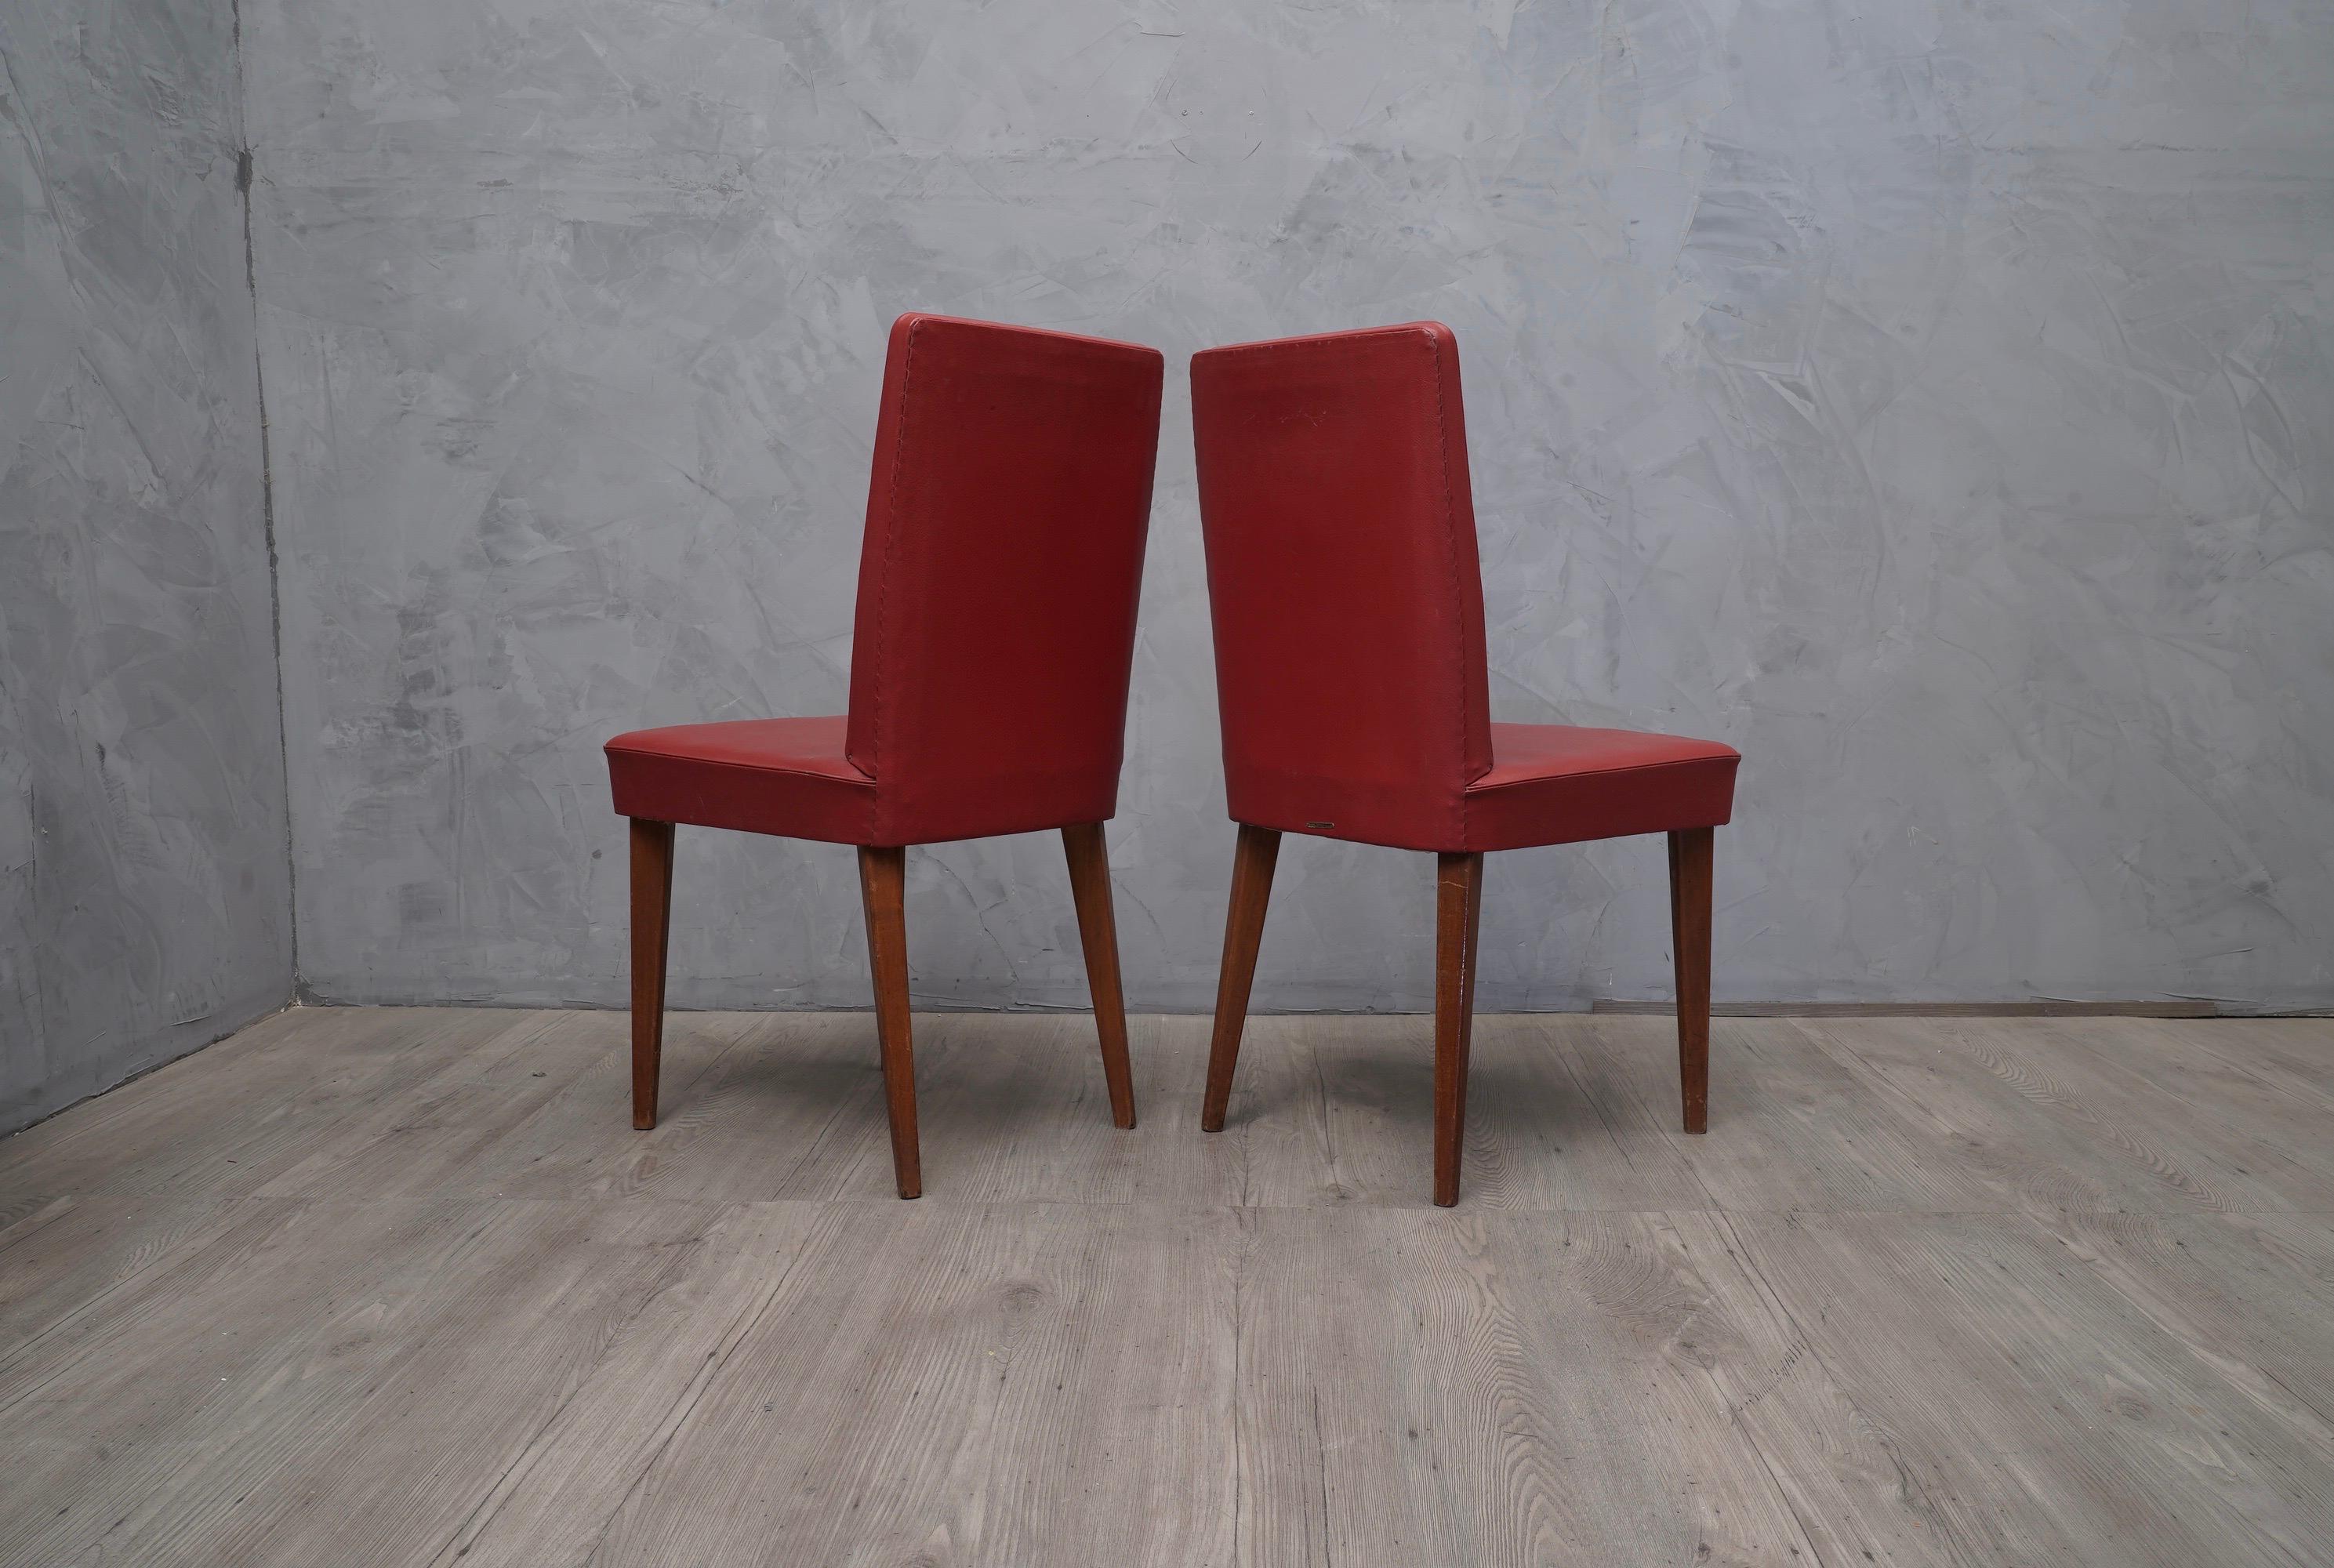 Paar raffinierte Stühle von Anonima Castelli, mit einer schönen leuchtend roten Farbe.

Holzstruktur, bezogen mit rotem Ökoleder, original aus der Zeit. Vier Beine in Eichenholz lackiert. Wie Sie auf den Fotos sehen können, befindet sich auf der